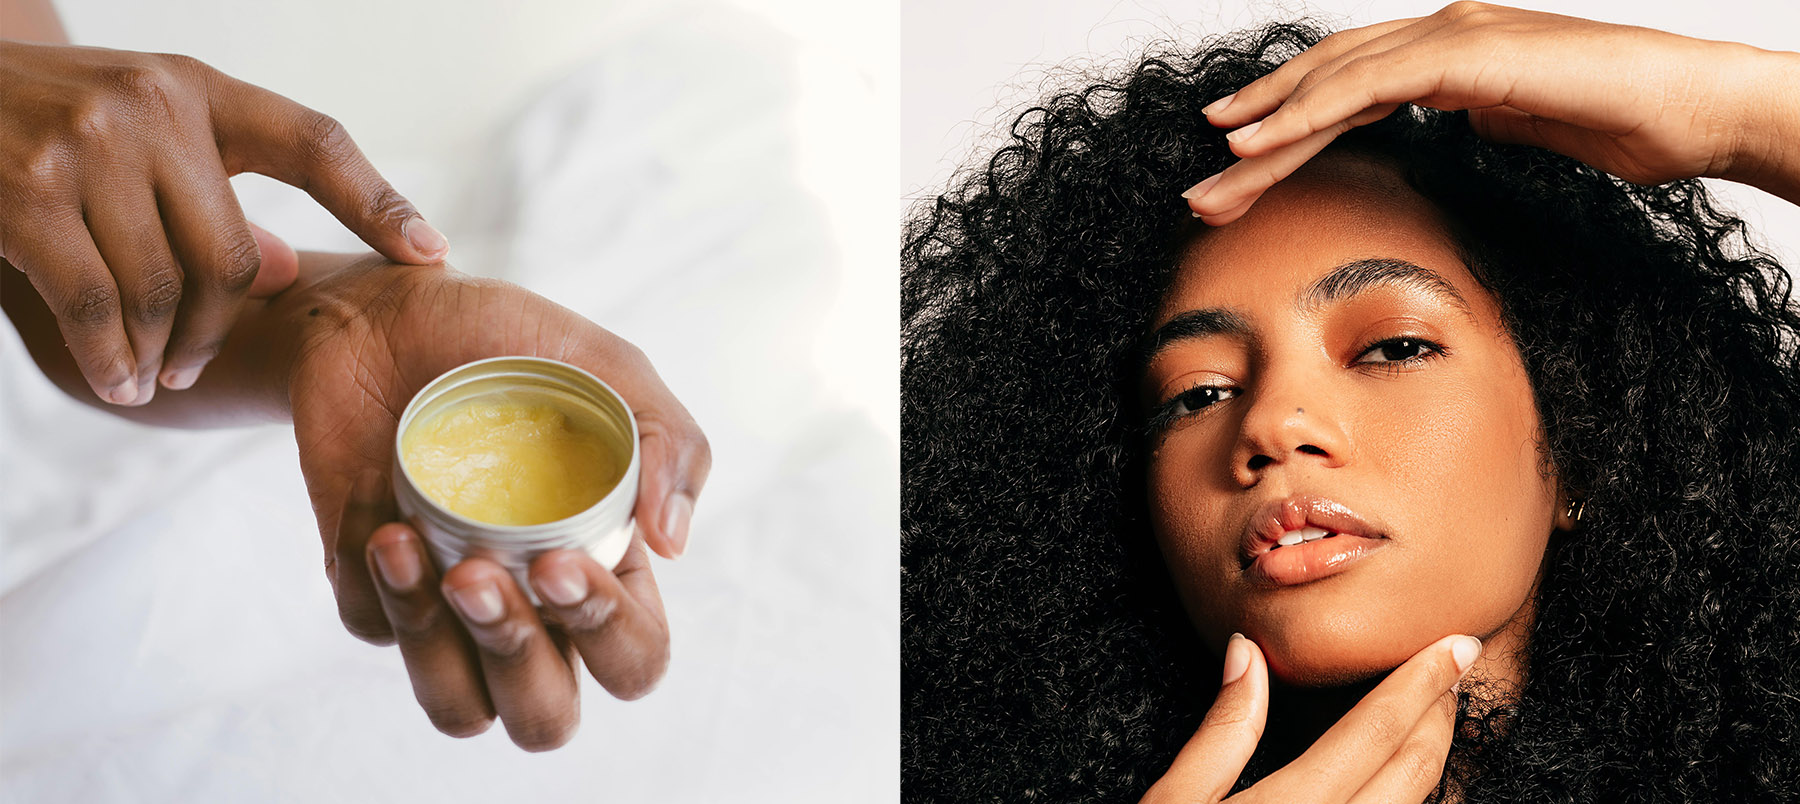 Afinal, quais procedimentos dermatológicos são seguros para pele negra?